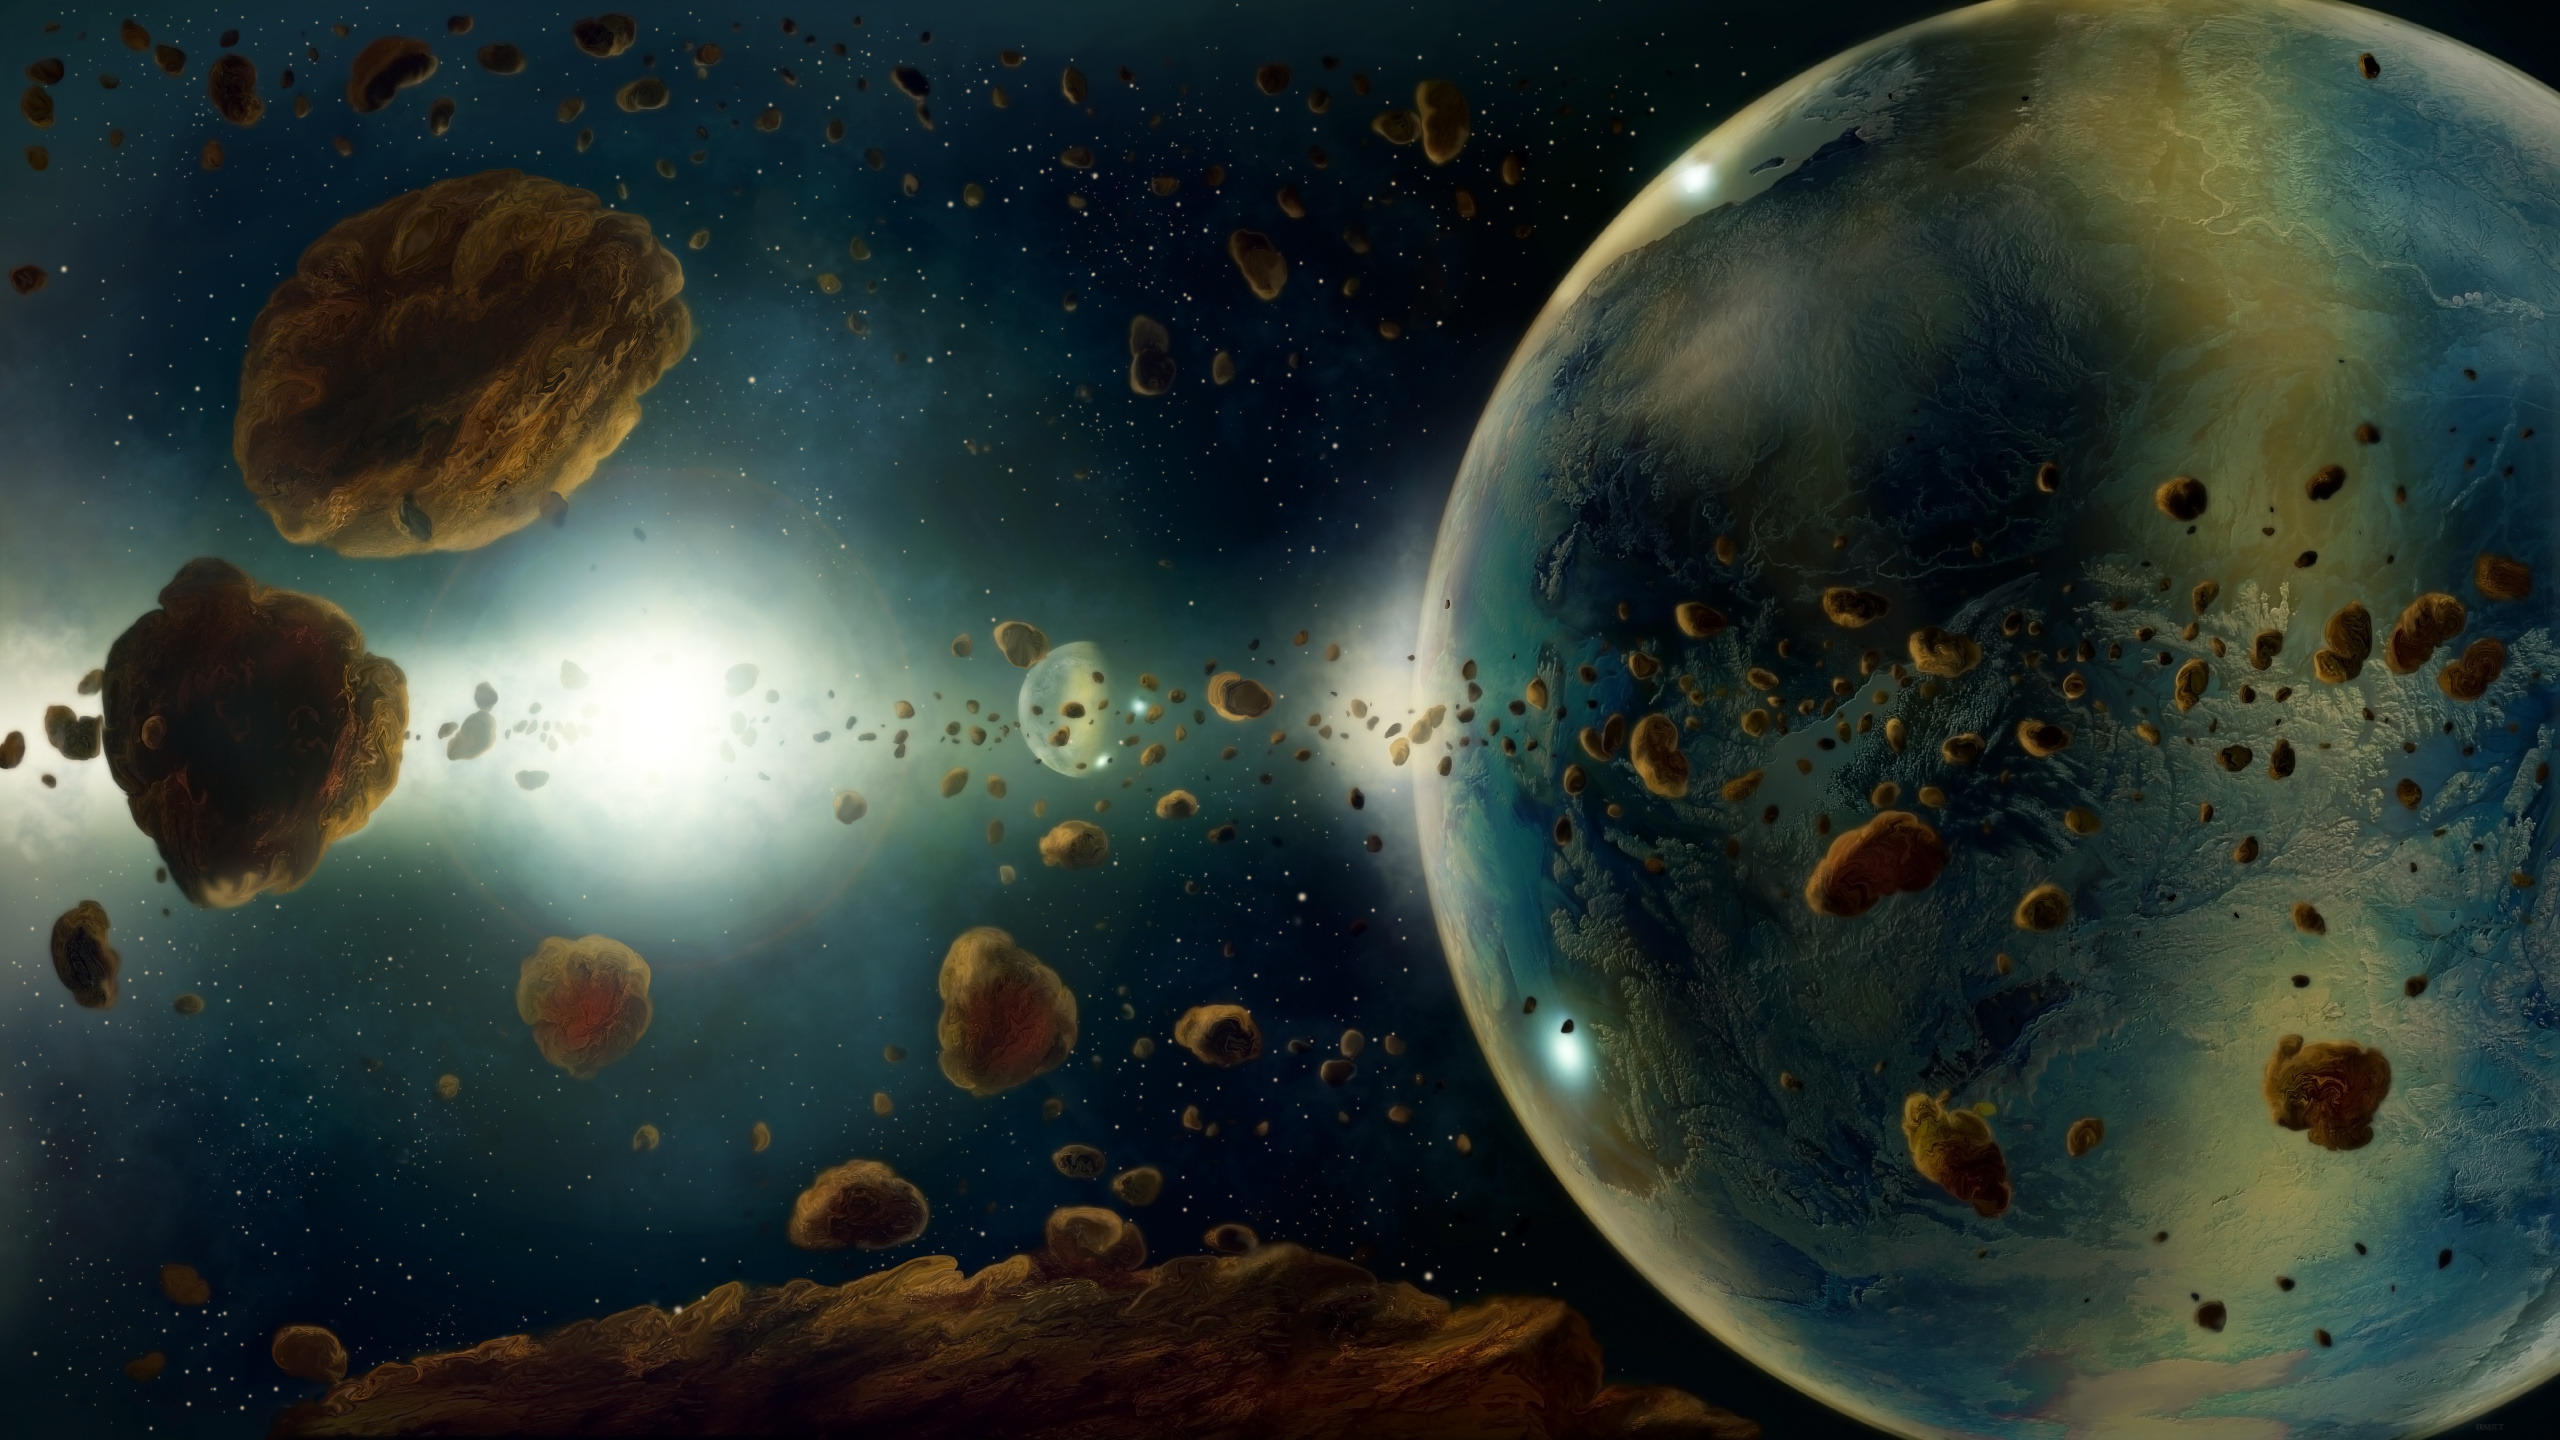 小行星, 这个星球, 外层空间, 天文学对象, 宇宙 壁纸 2560x1440 允许